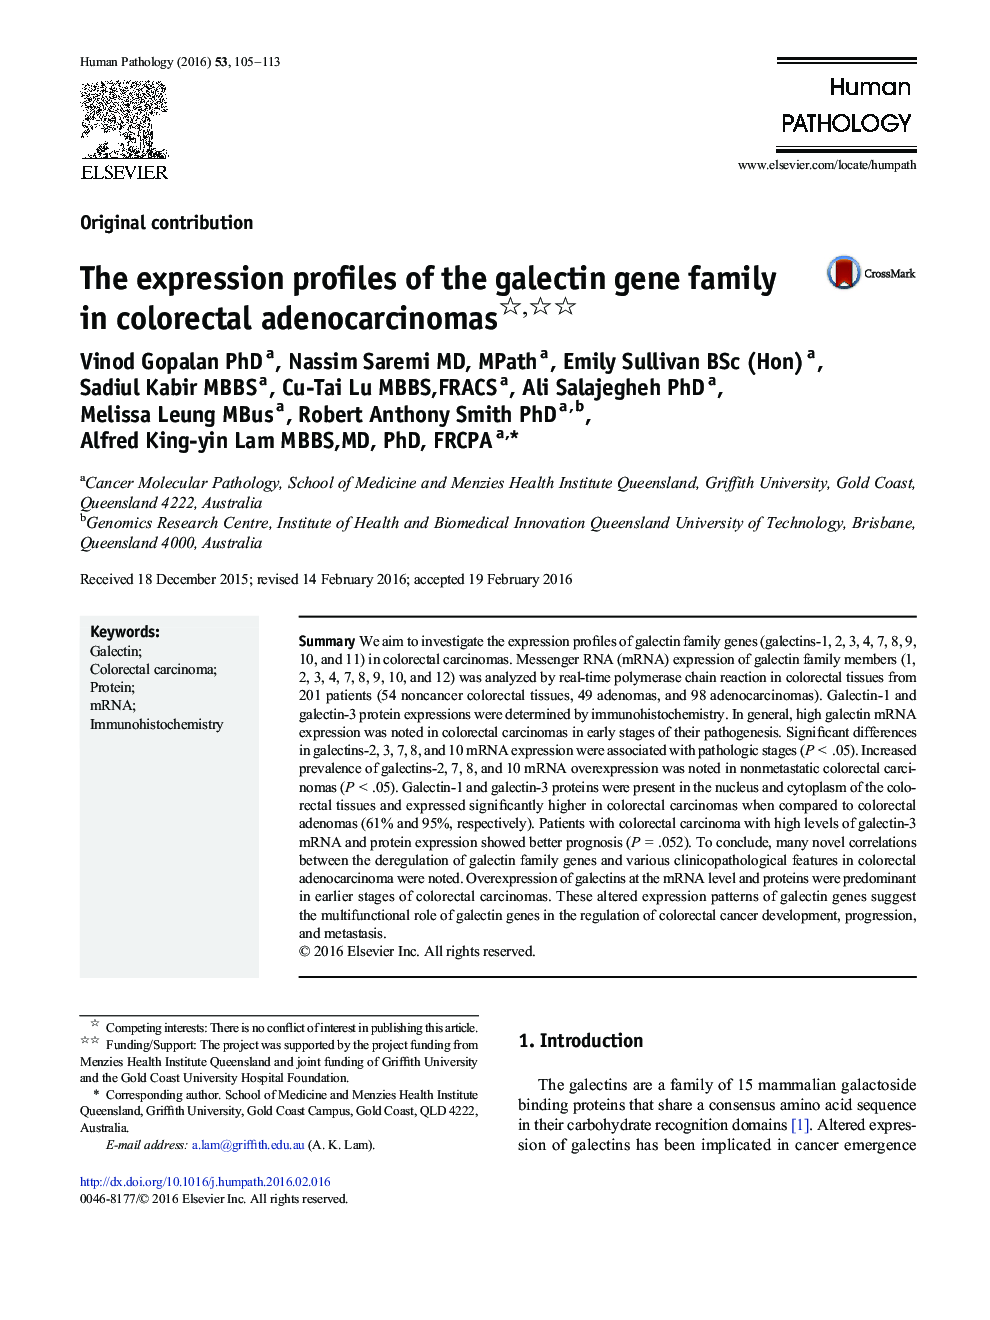 نمایه های بیان خانواده ژن گالککتین در آدنوکارسینوم های کولورکتال 